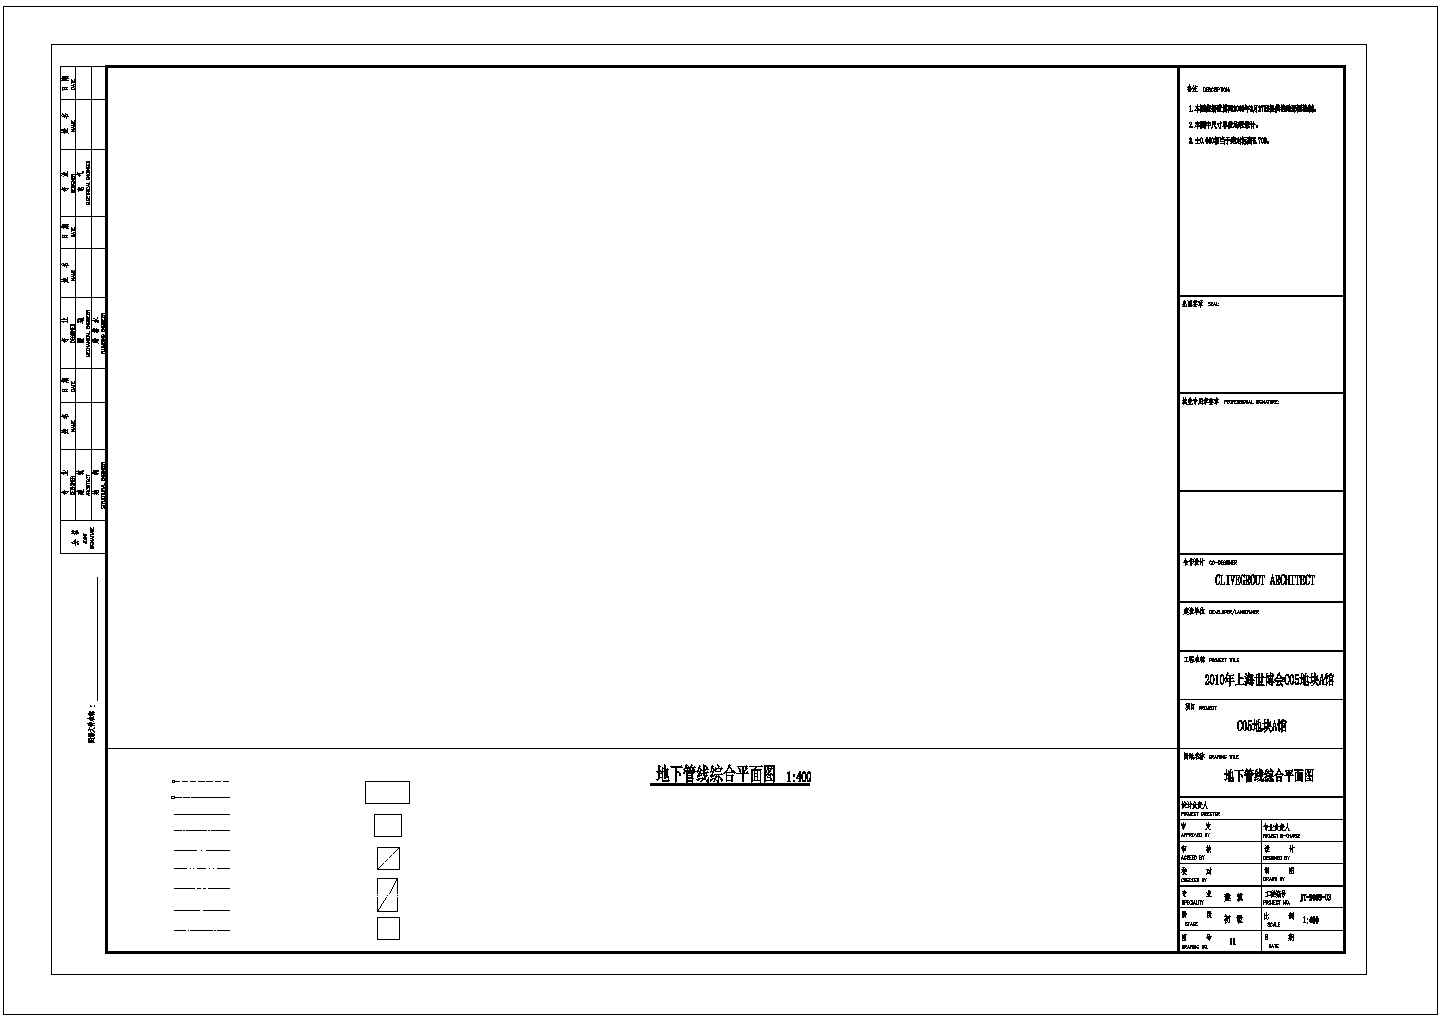 6141平米展览展馆建筑初步设计方案图-地下管线综合平面图